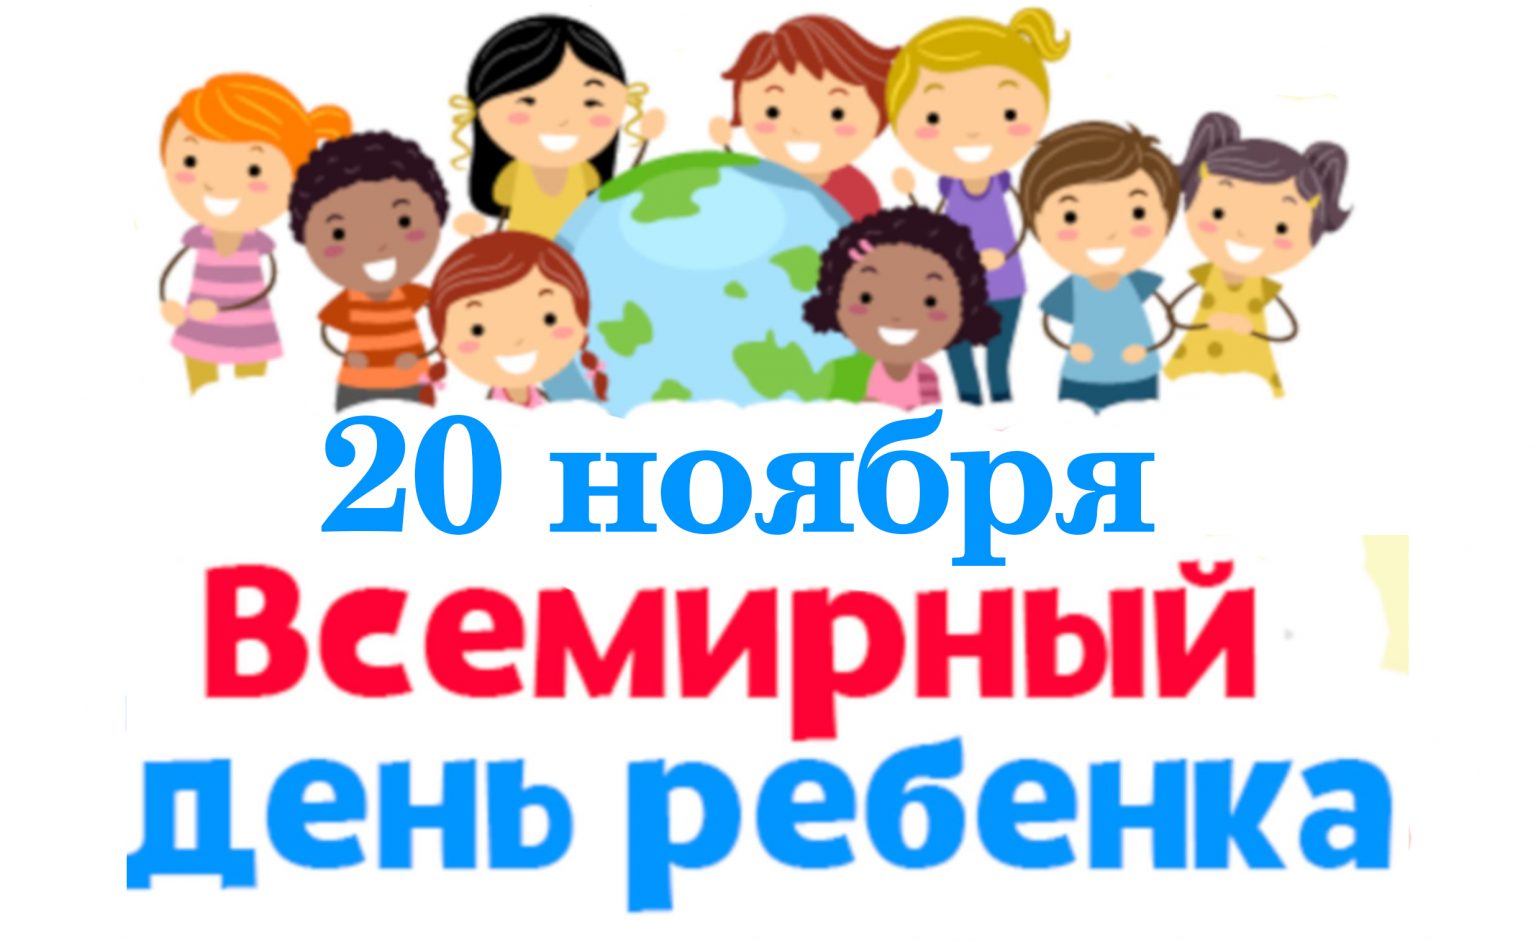 Всемирный день ребенка мероприятия в школе